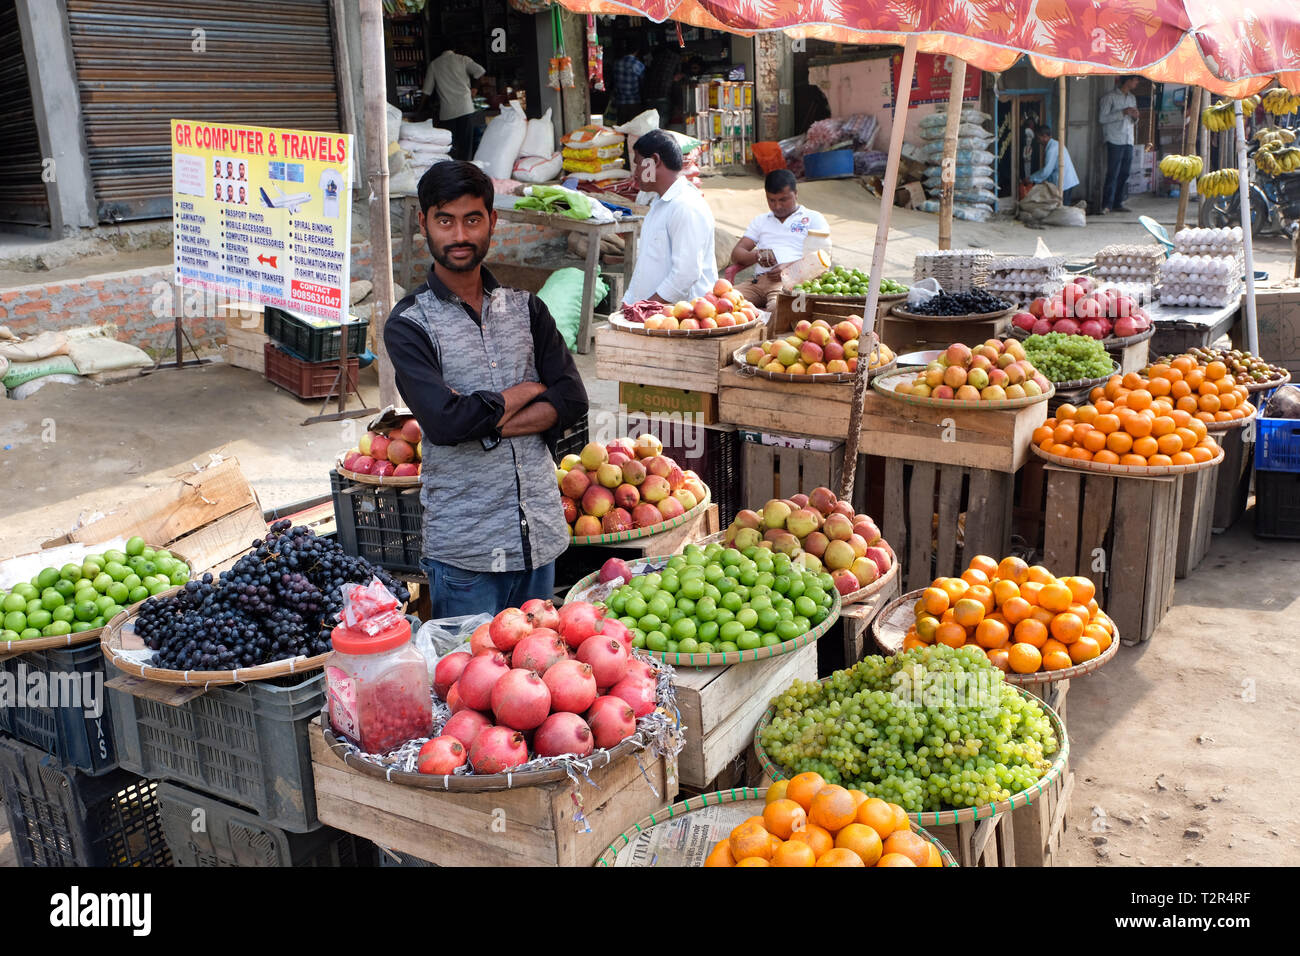 Markt für Obst und Gemüse in der Stadt Jagiroad/Assam, Indien------- Obst- und Gemüsemarkt in der Stadt Jagiroad/Assam, Indien Stockfoto